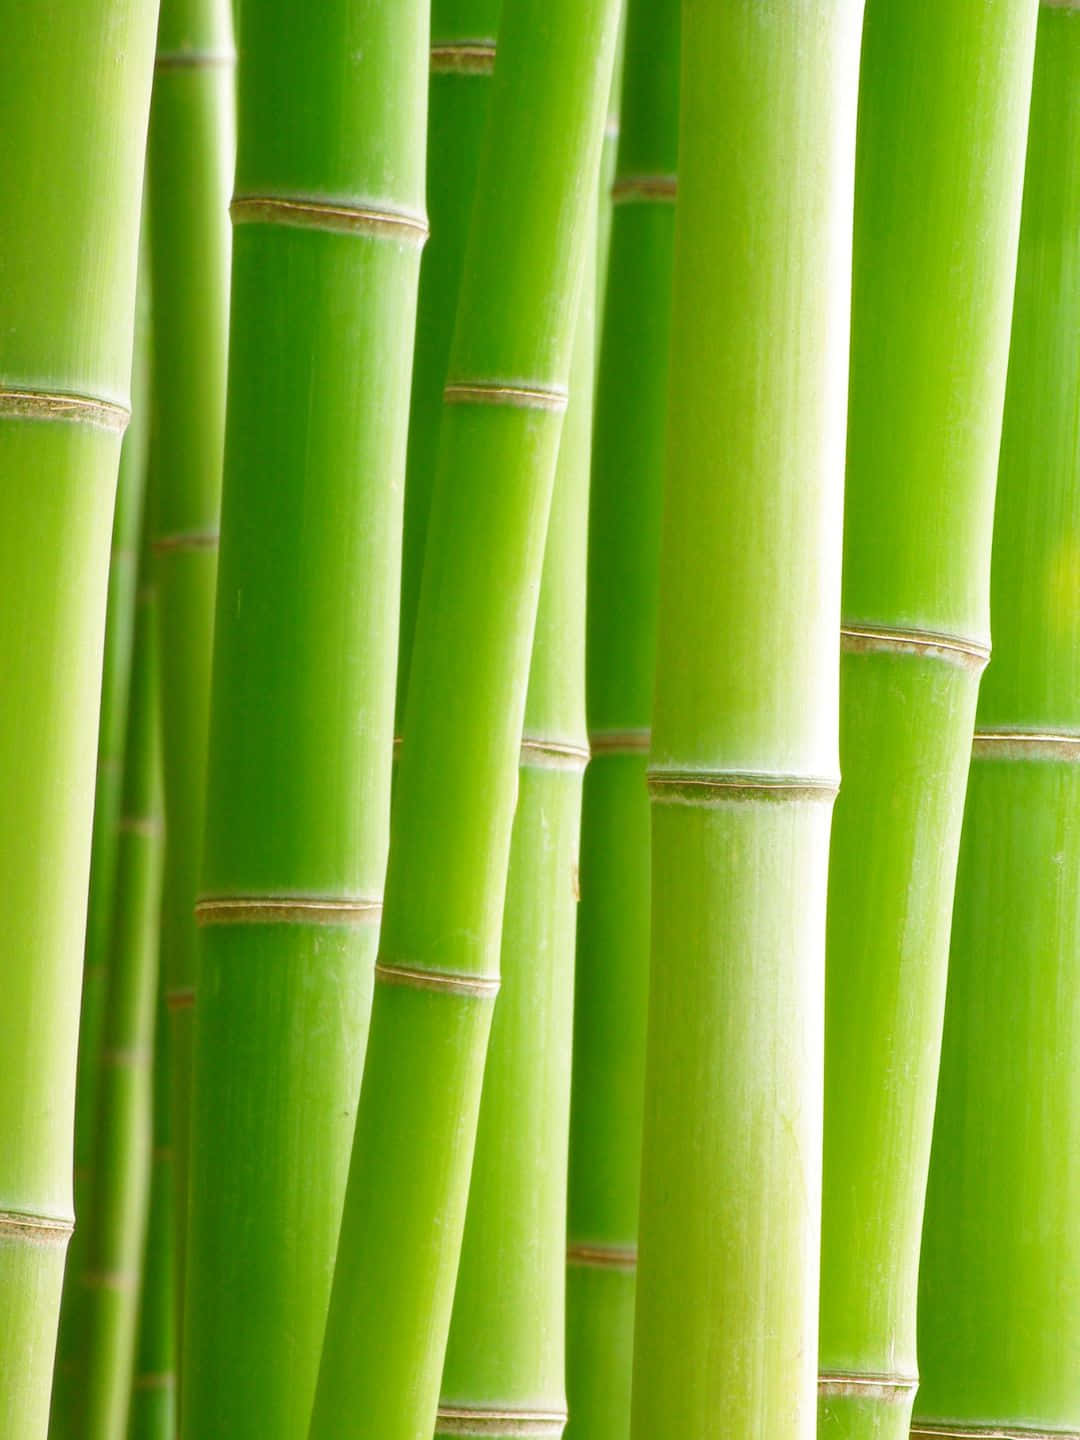 Sfondo1440p Di Bambù Con Steli Verdi Chiari Raggruppati